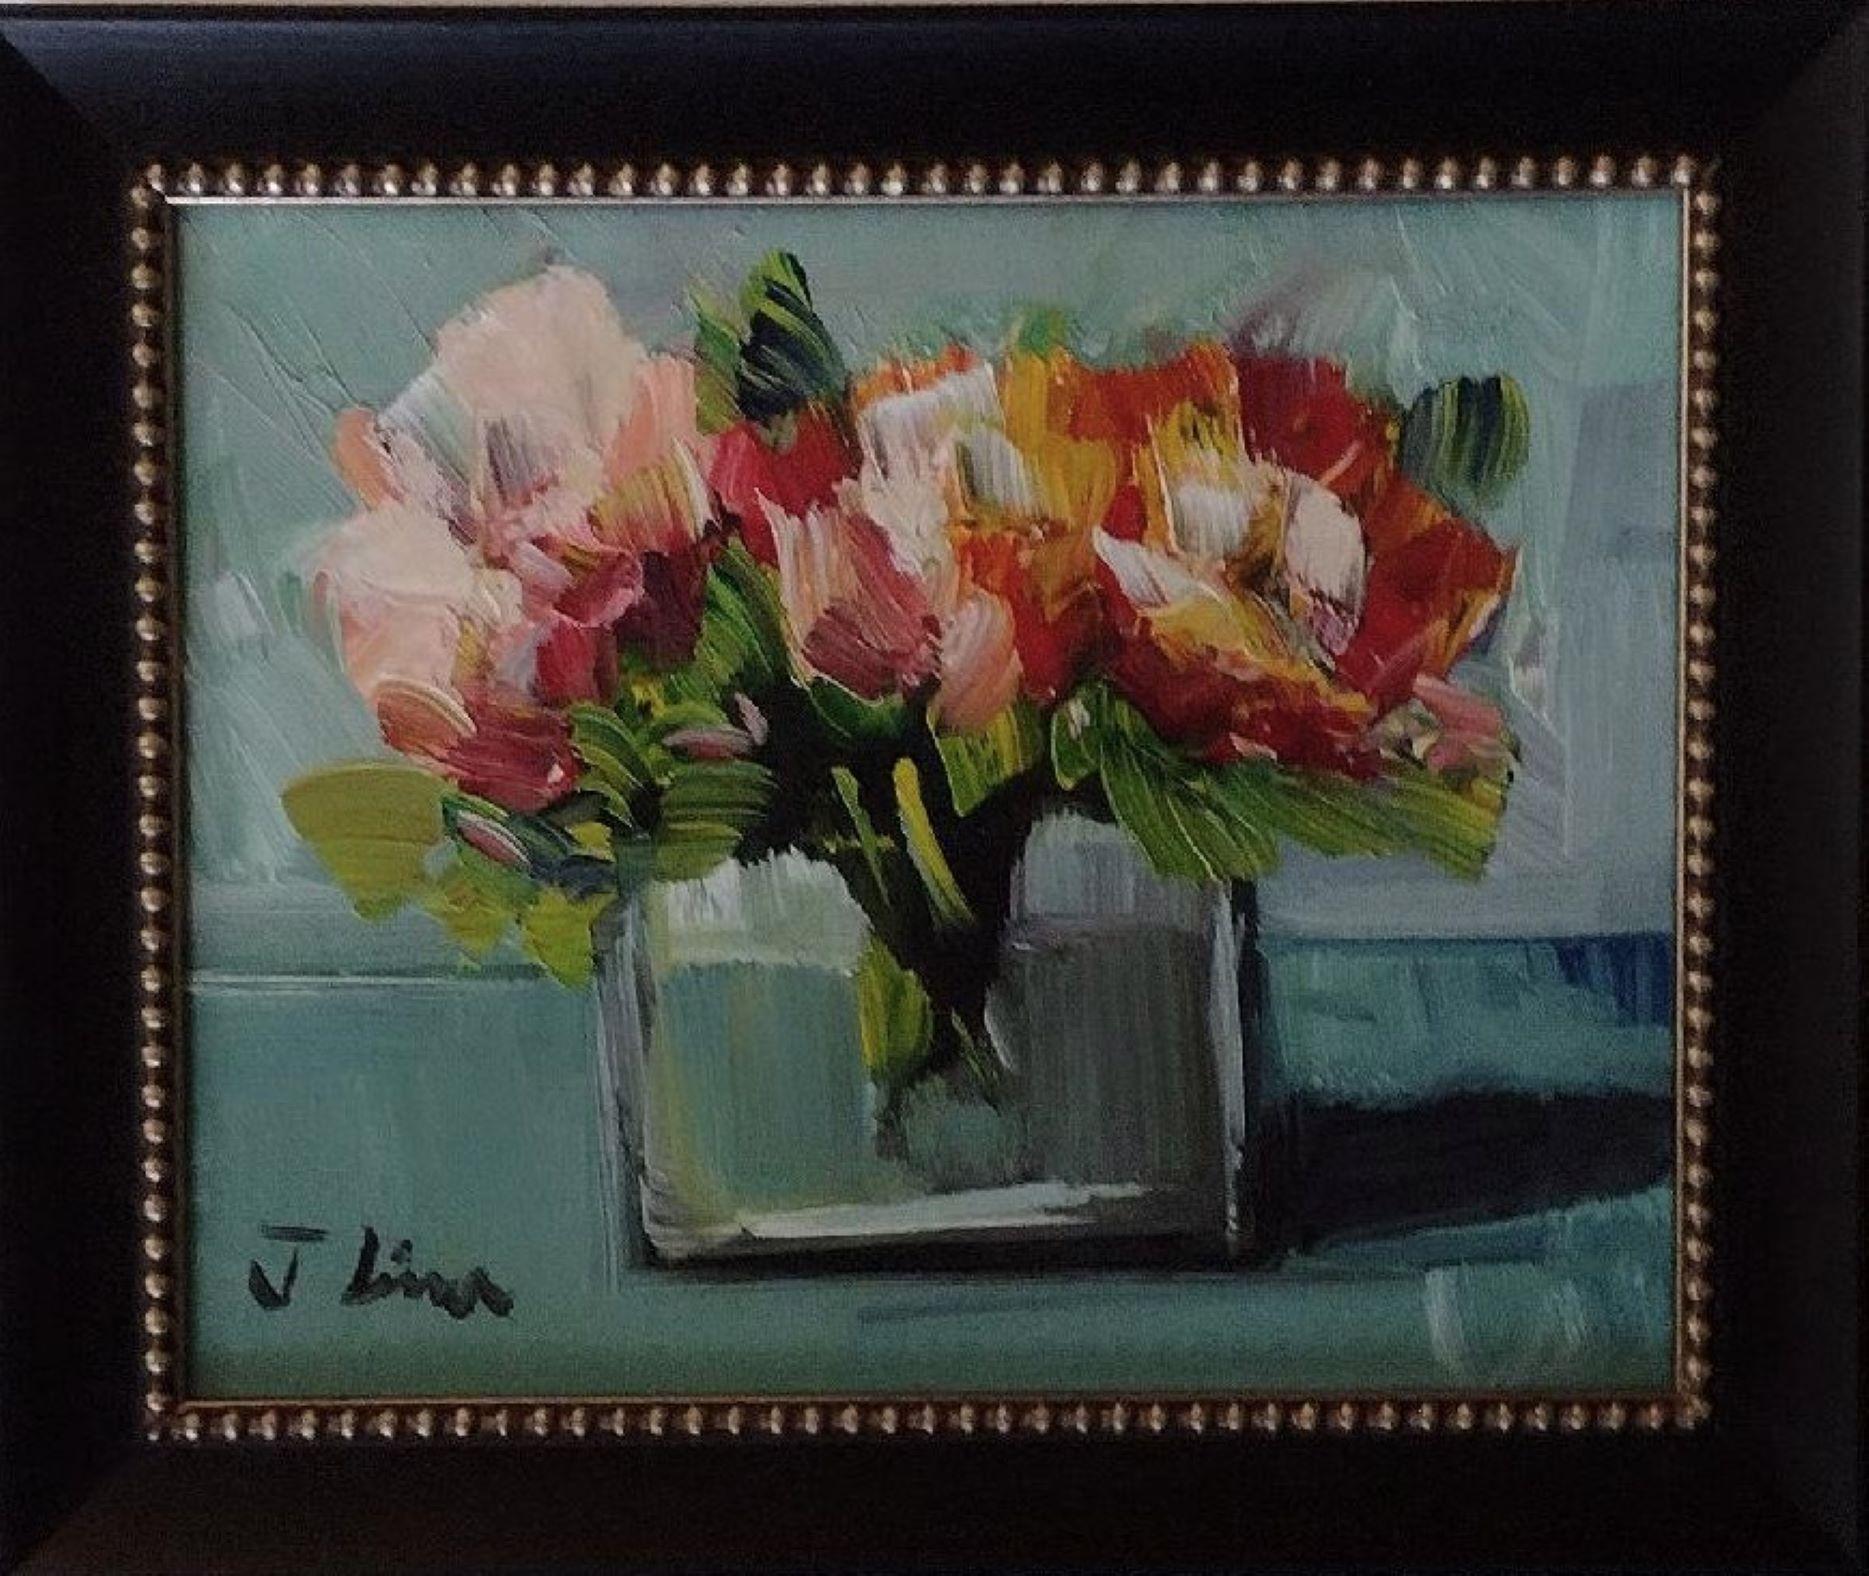 Jose Lima Still-Life Painting - Vase of Flowers III - Original Impressionist Oil Painting on Canvas 2022